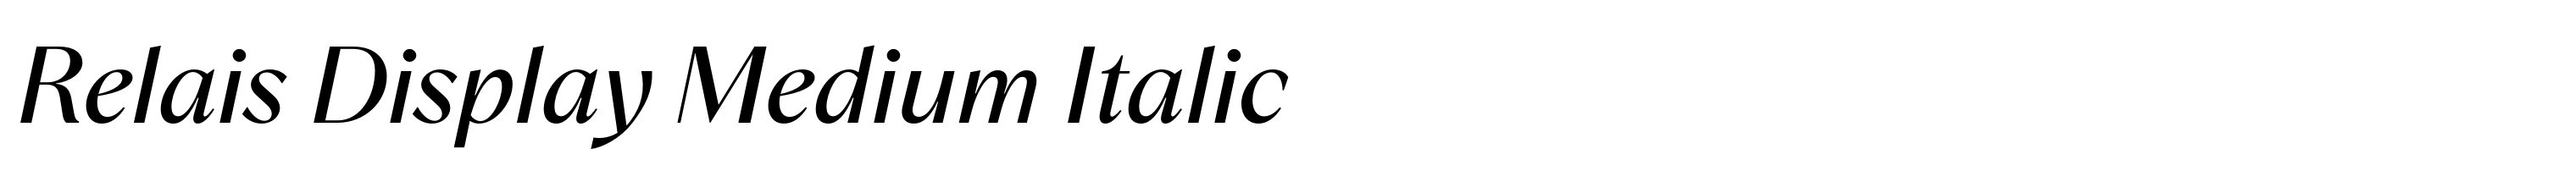 Relais Display Medium Italic